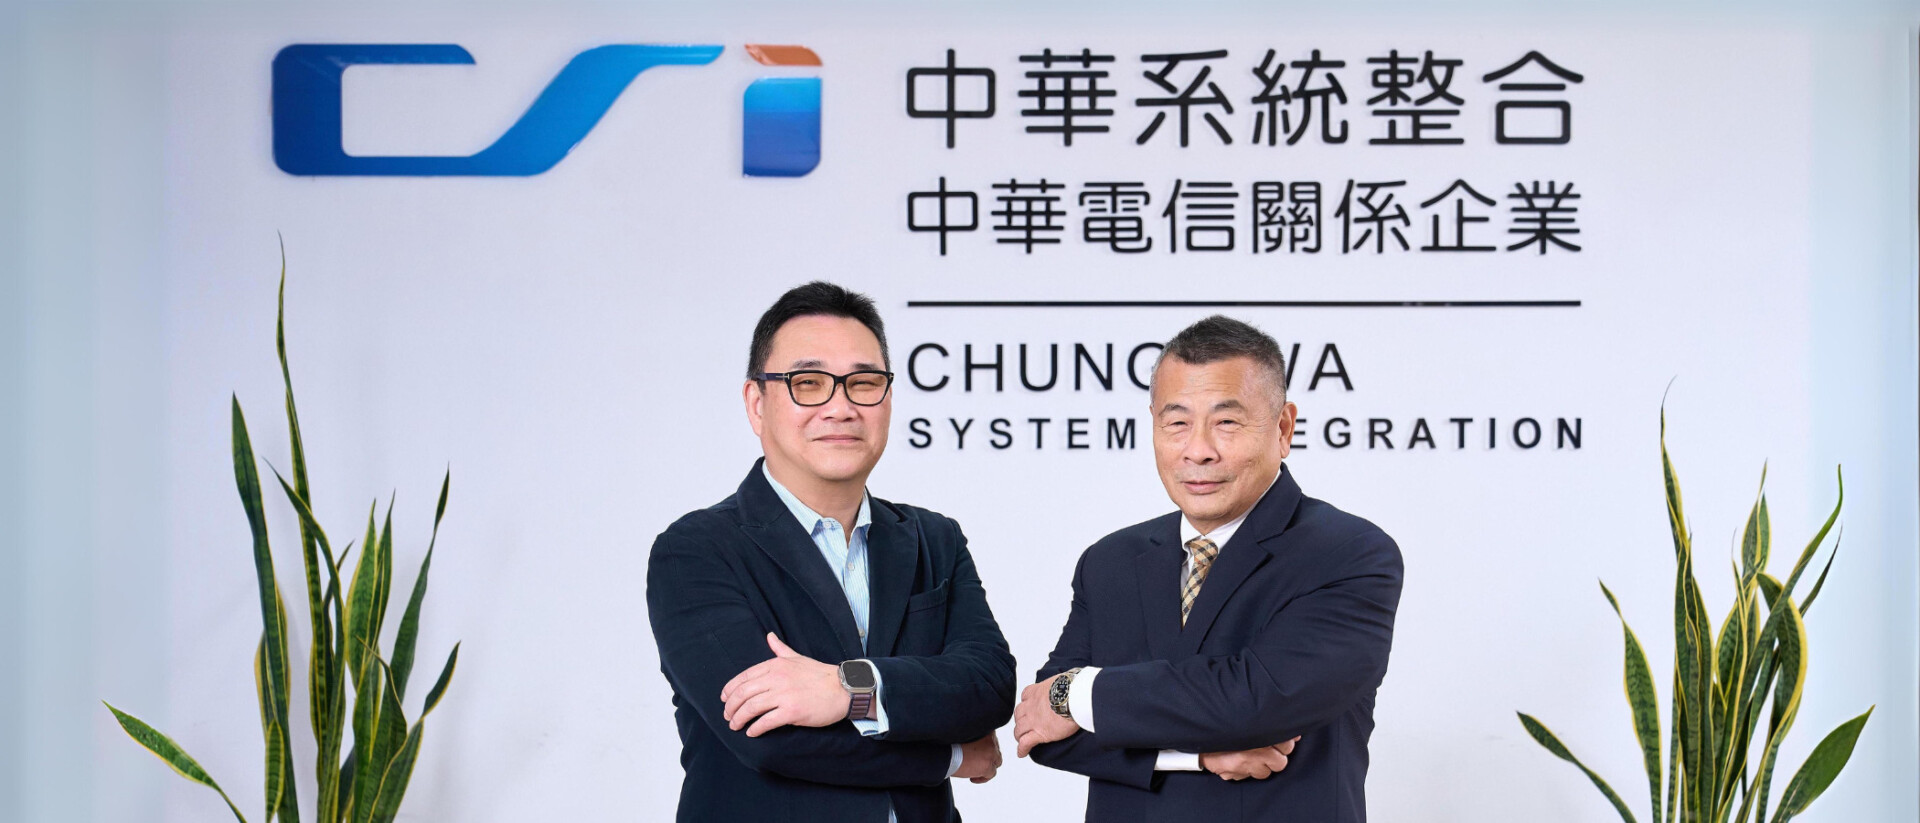 中華系統整合在董事長吳明德（右）、總經理俞忠麟（左）共同領導之下，帶動企業轉型並擴大服務價值鏈，積極搶攻數位及永續商機。